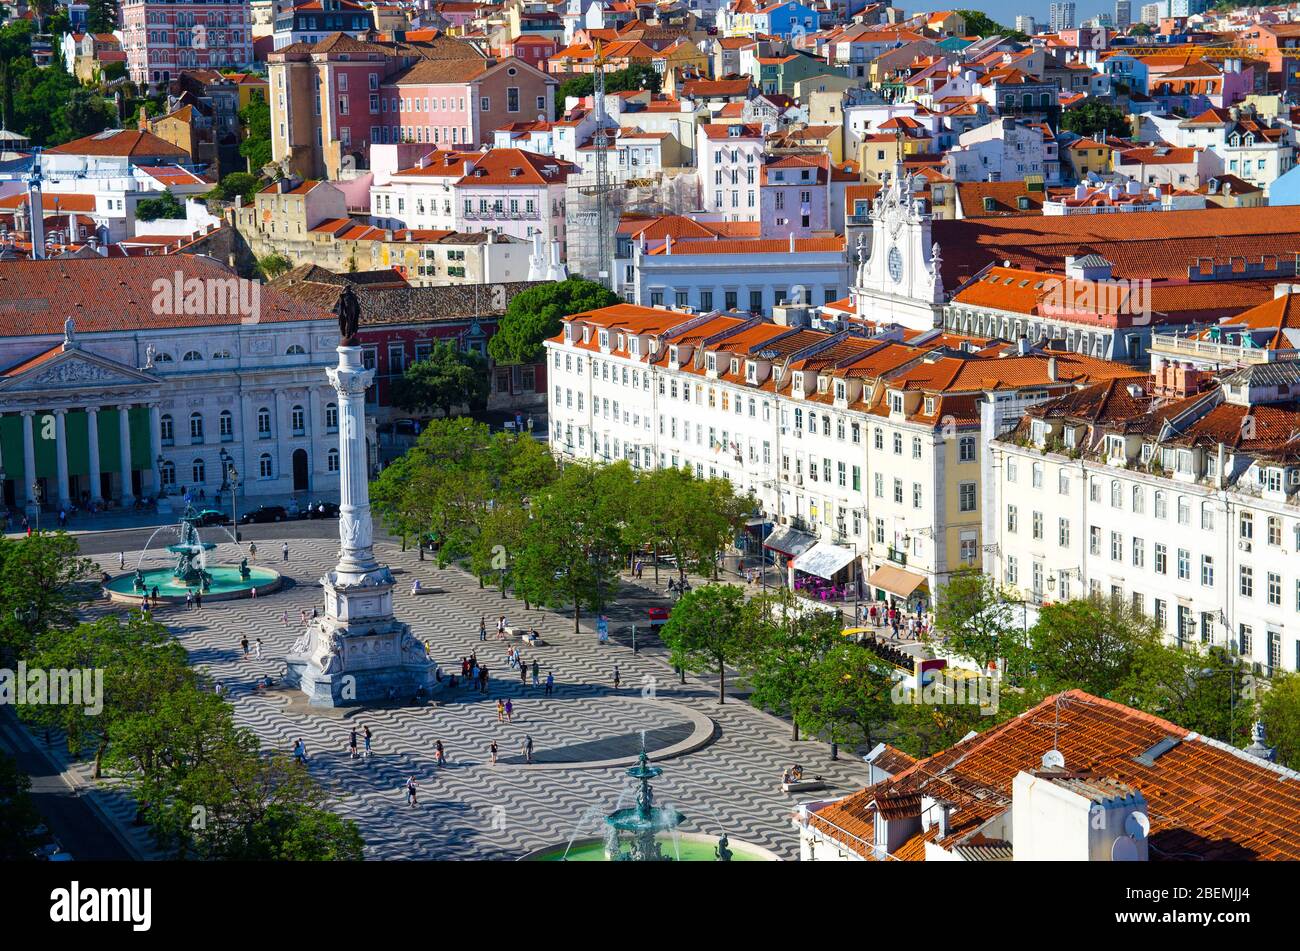 Portugal, Lisbonne, la place centrale principale de la vieille ville, place Rossio en été avec pavé portugais en pierre, grandes fontaines et statue de Dom Pedro I Banque D'Images